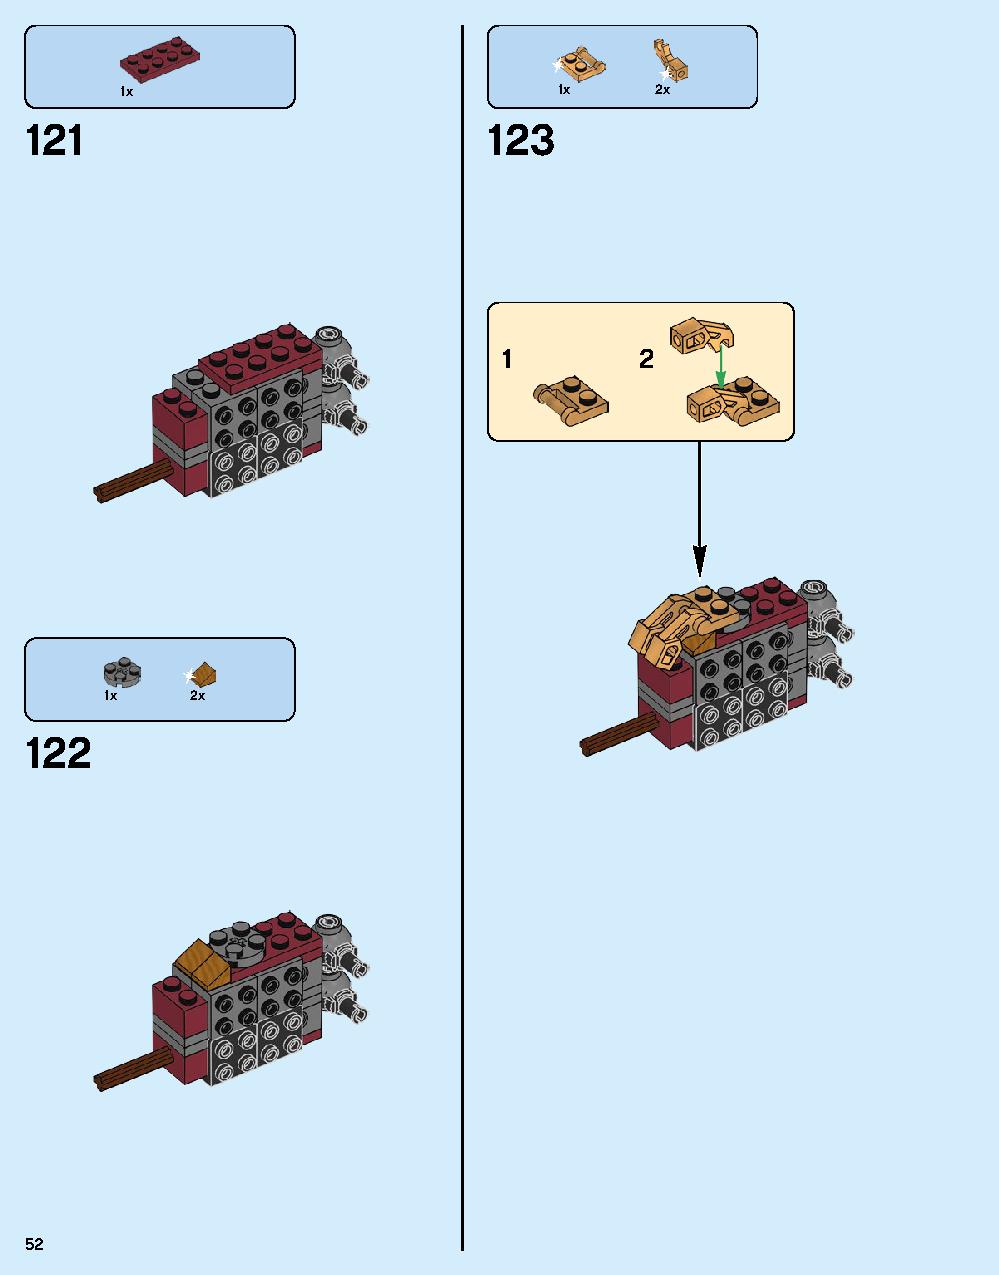 ハルクバスター：ウルトロン・エディション 76105 レゴの商品情報 レゴの説明書・組立方法 52 page